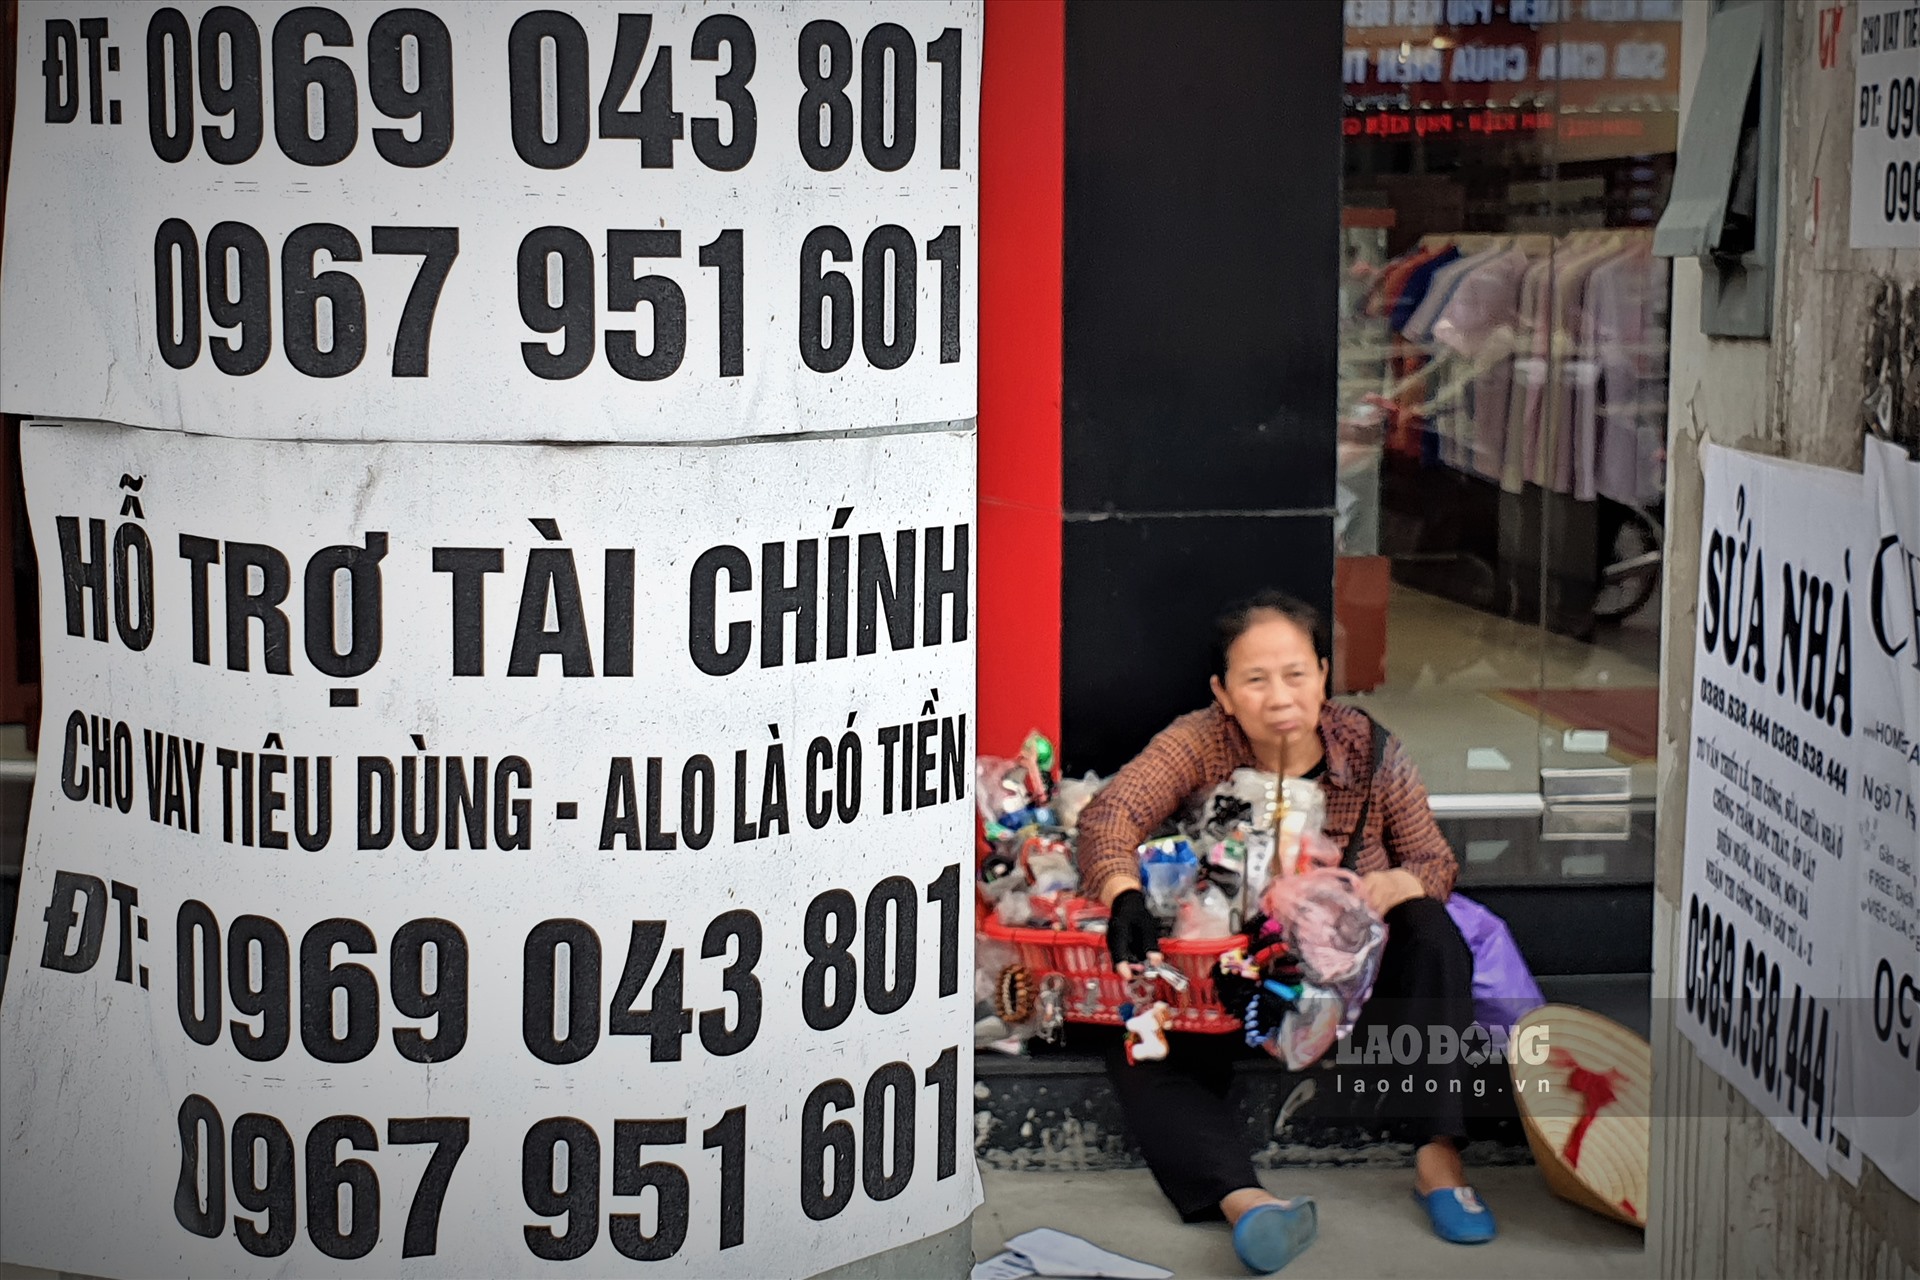 Ngày 5.5, theo ghi nhận của phóng viên, sau thời gian cách ly xã hội vì dịch COVID-19, tại các ngõ phố Thủ đô Hà Nội dày đặc những tờ rơi, giấy dán quảng cáo cho vay tiền.